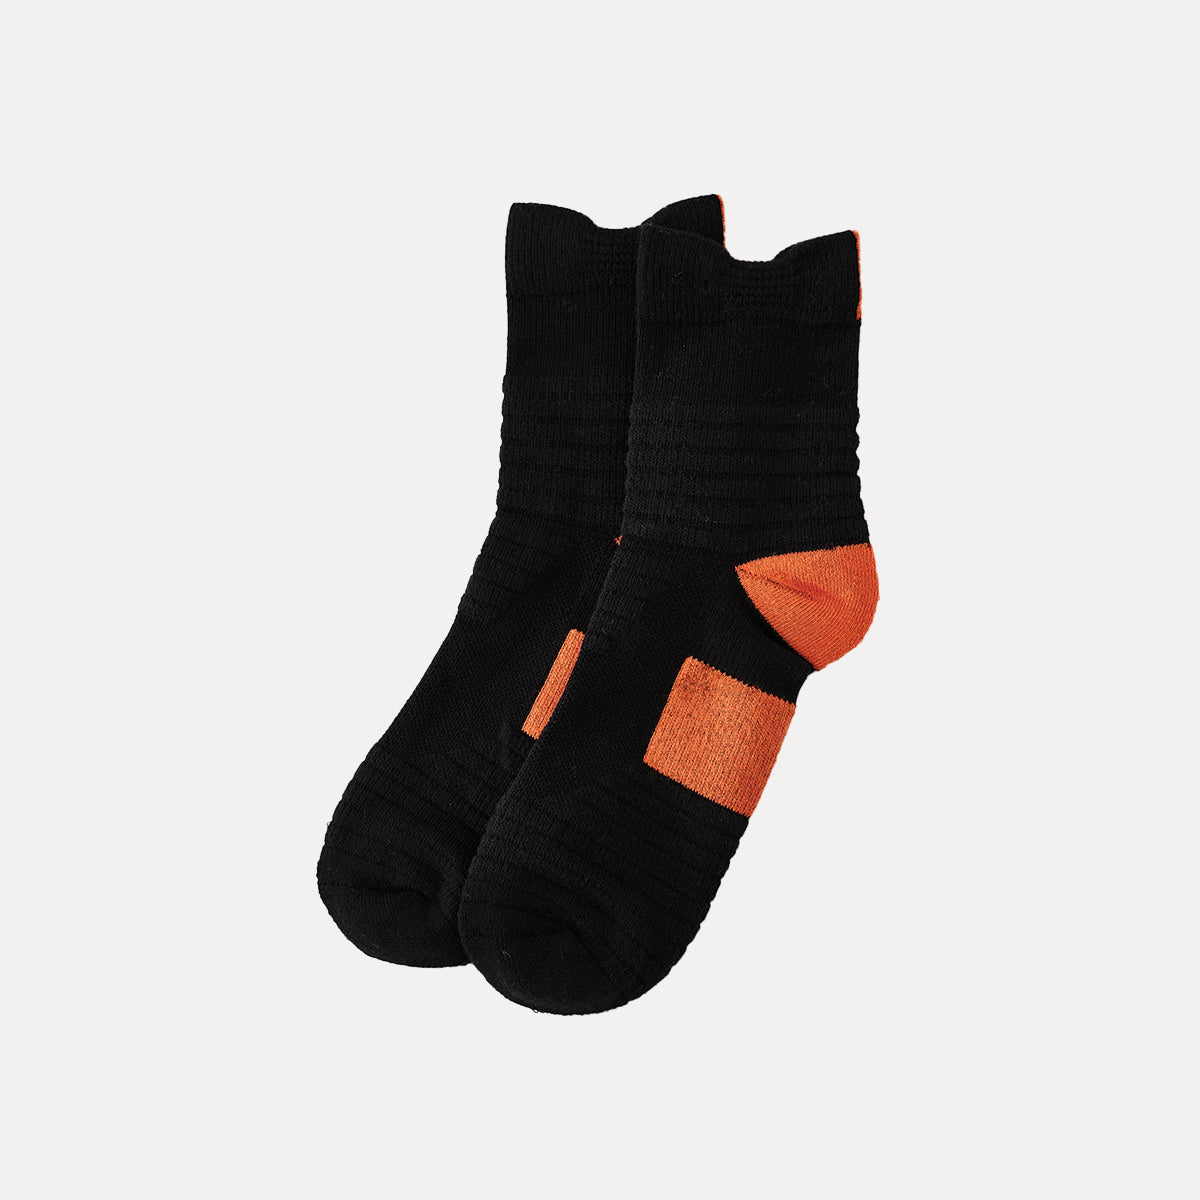 襪子 | ACTIVE 船員襪 - Hi 黑色/橙色